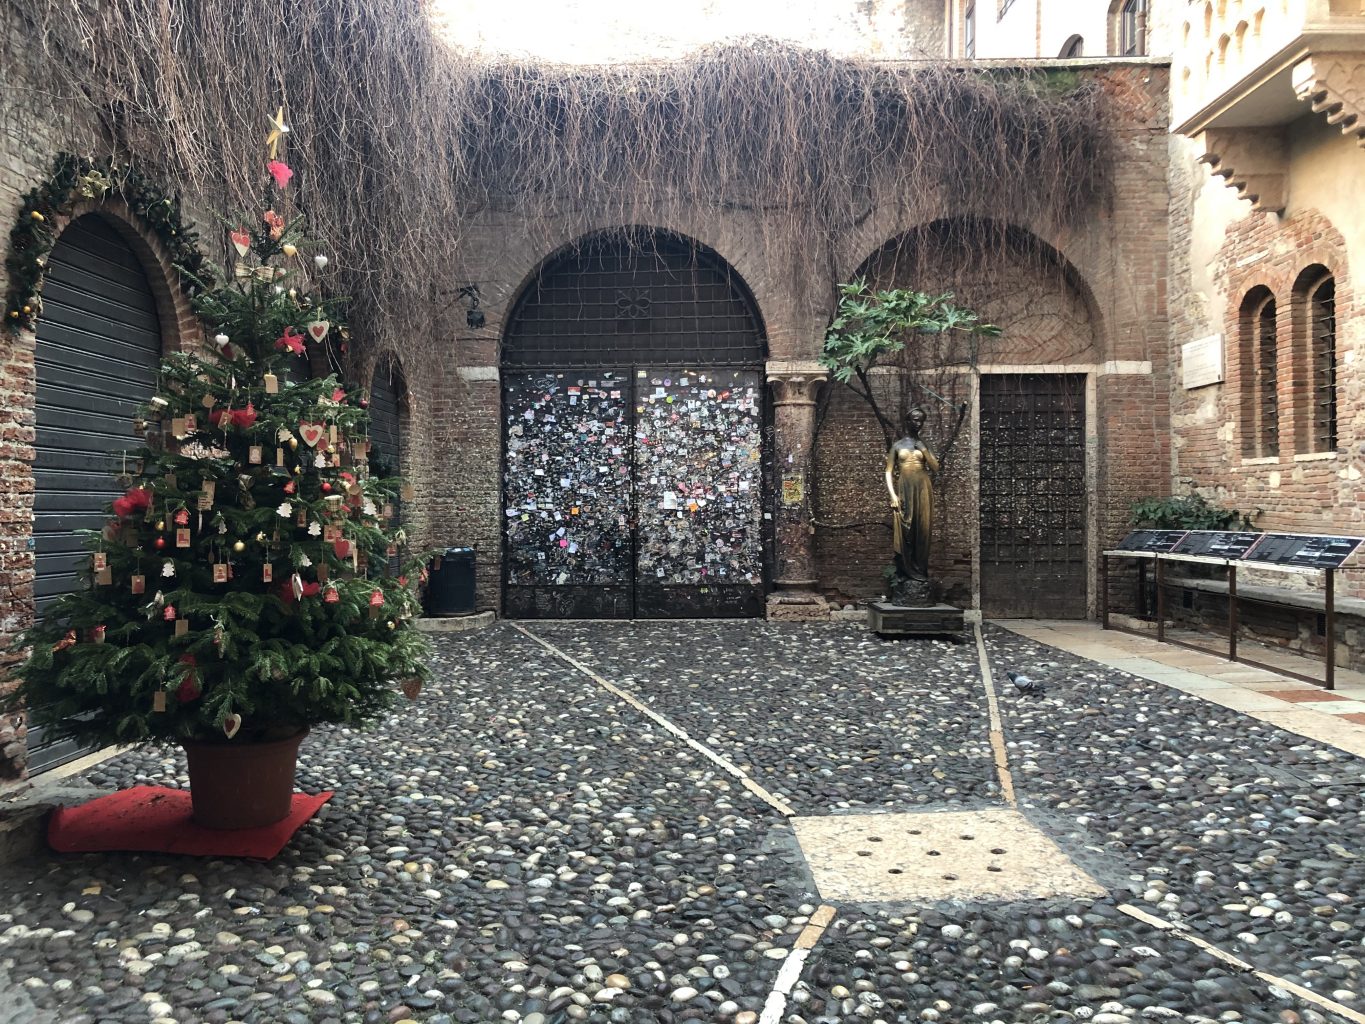 Patio interior Casa de Julieta. Visitar la Casa de Julieta en Verona